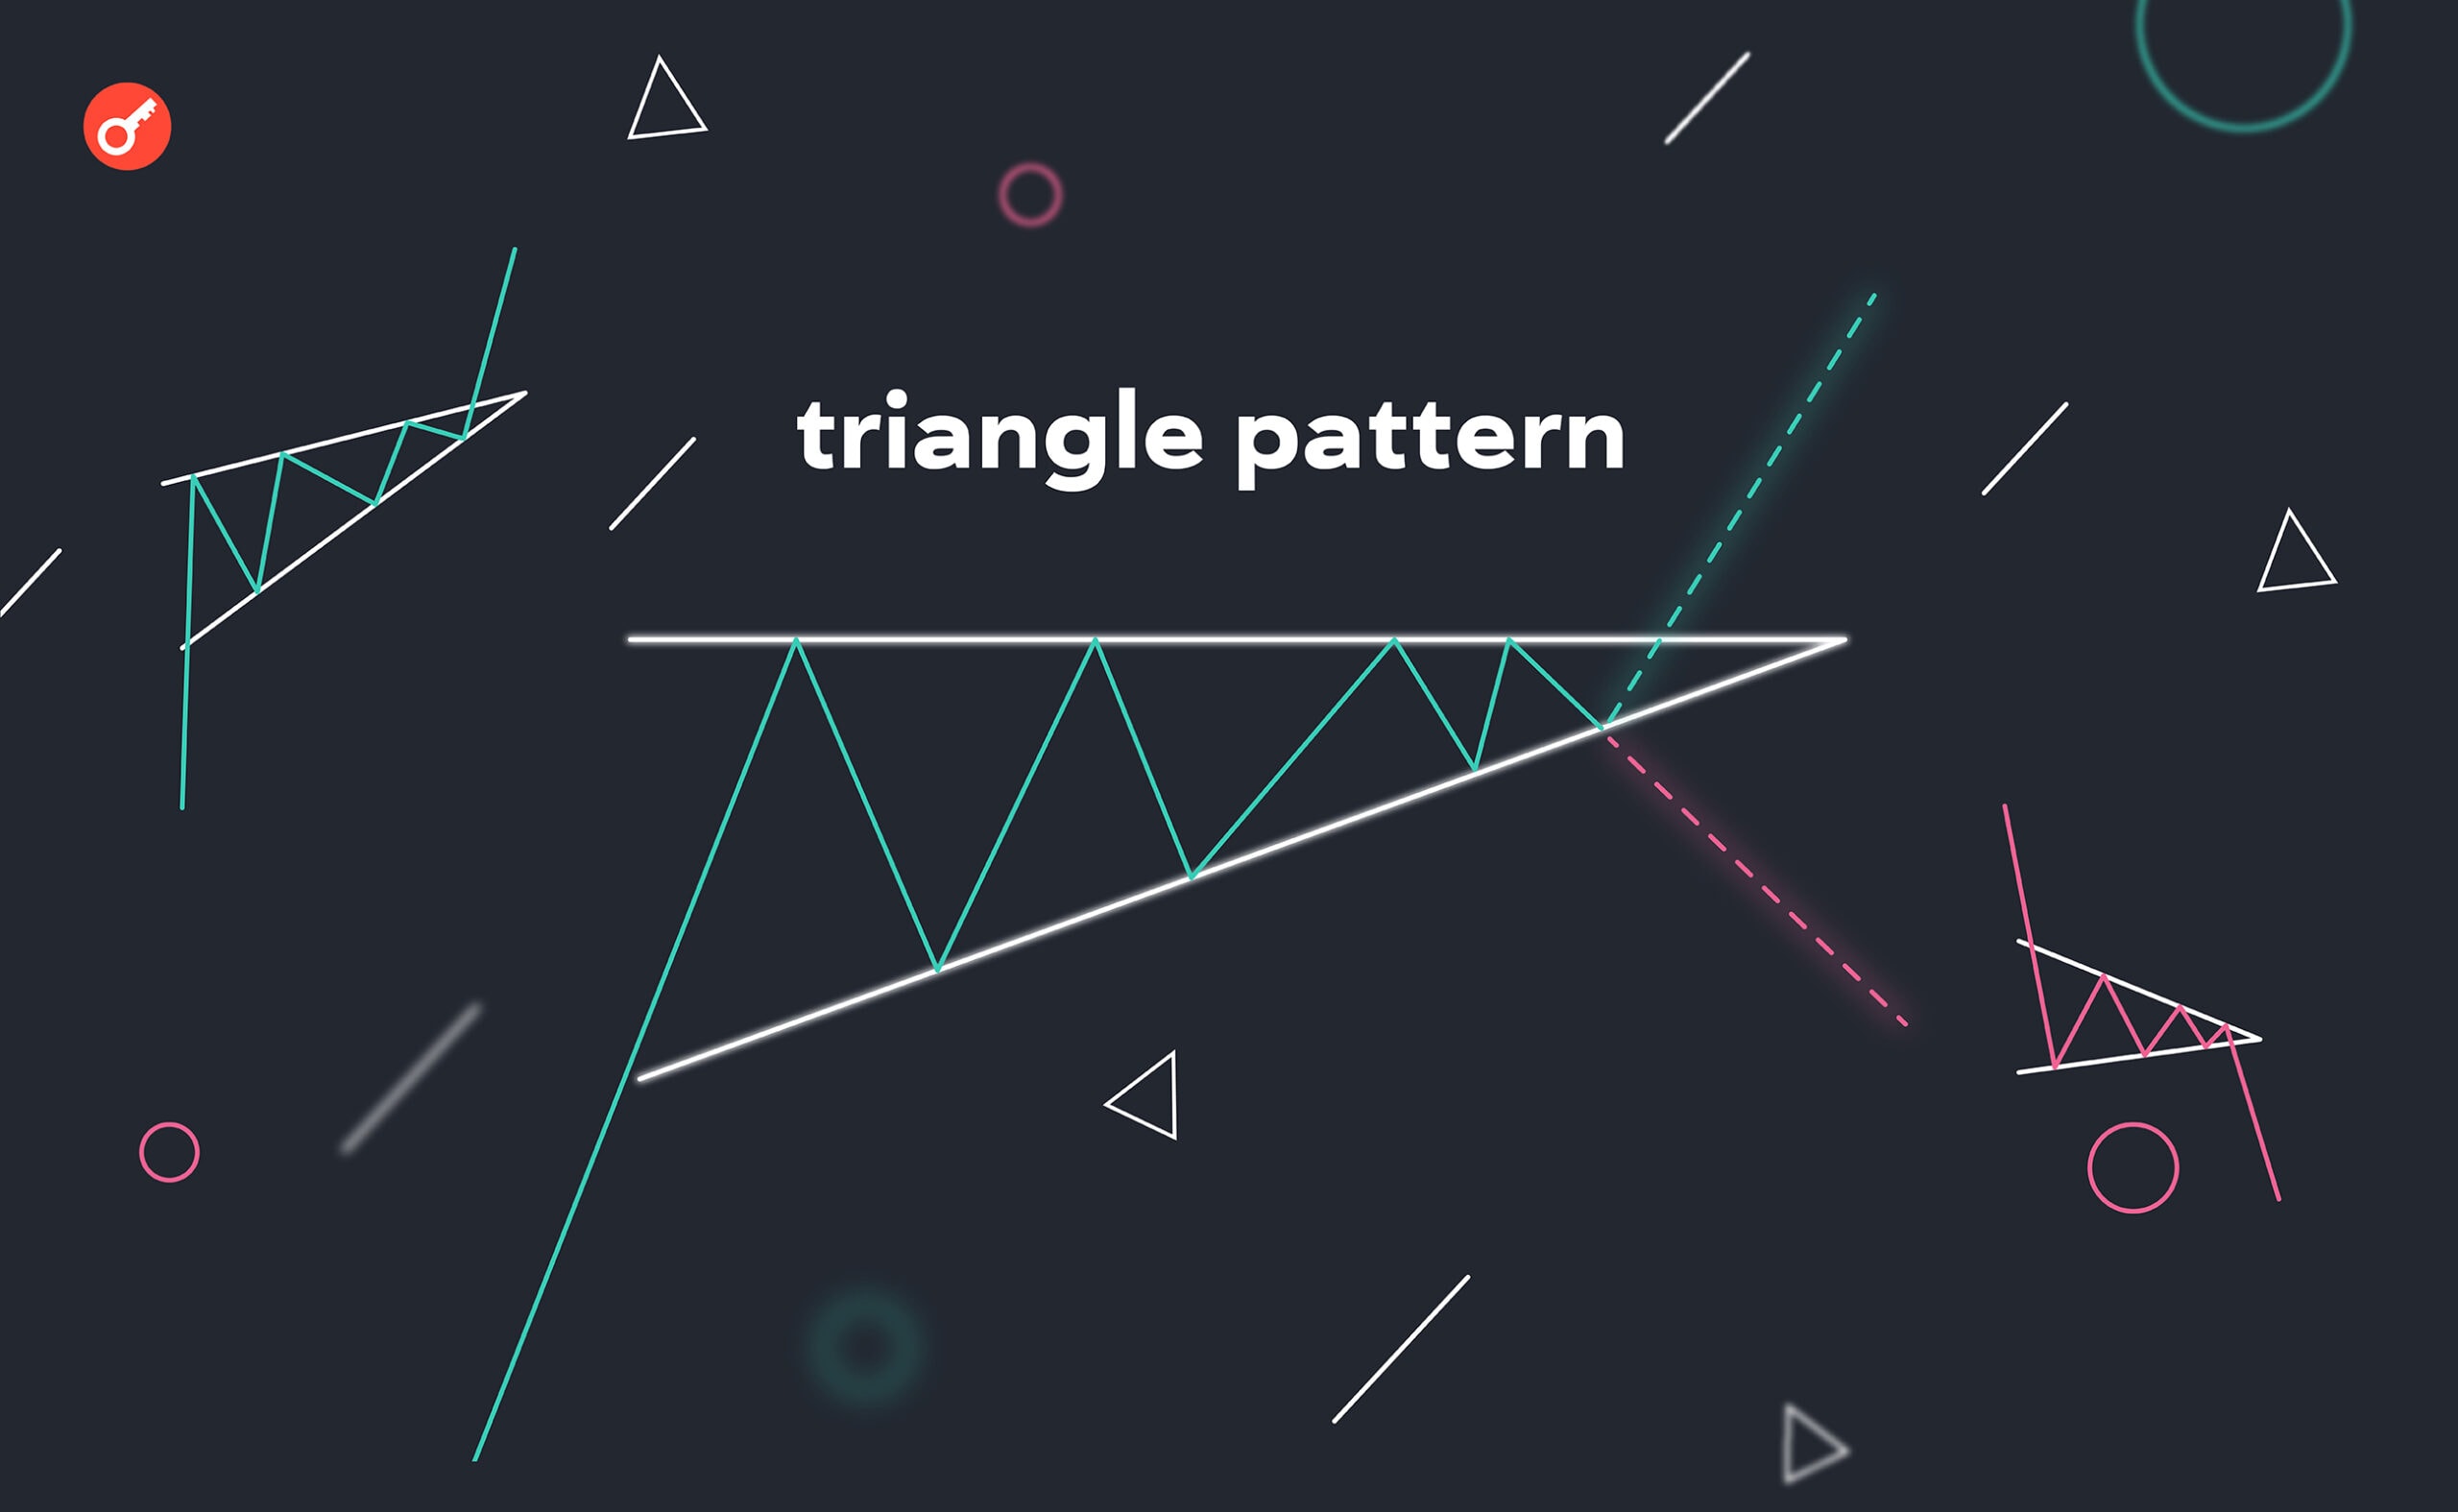 Паттерн «Треугольник» в криптотрейдинге: виды, анализ, выбор стратегии торговли. Заглавный коллаж статьи.